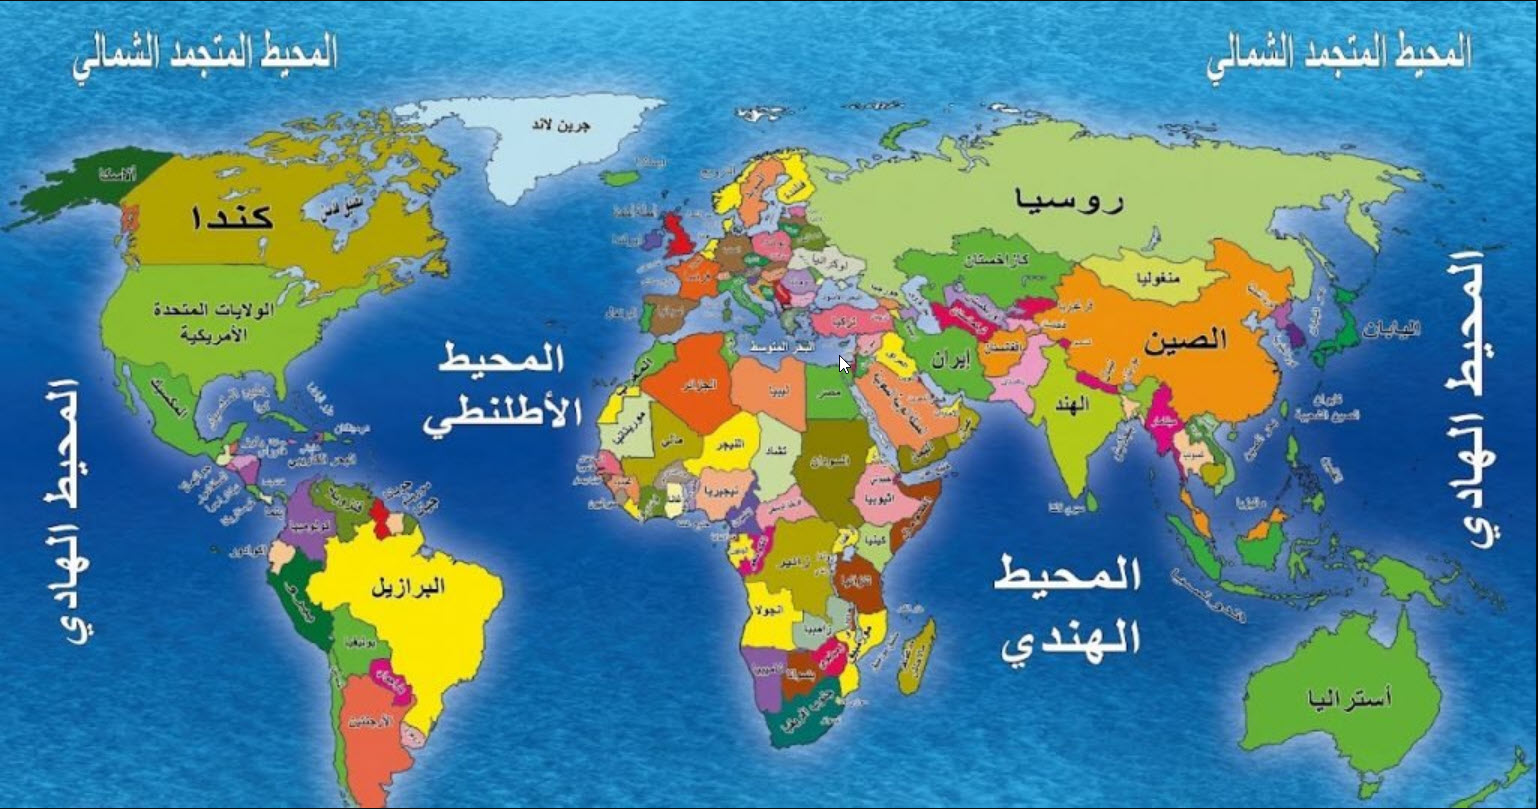 ماهي الدول في وقتنا الحالي المقصودة بالخسف غير جزيرة العرب